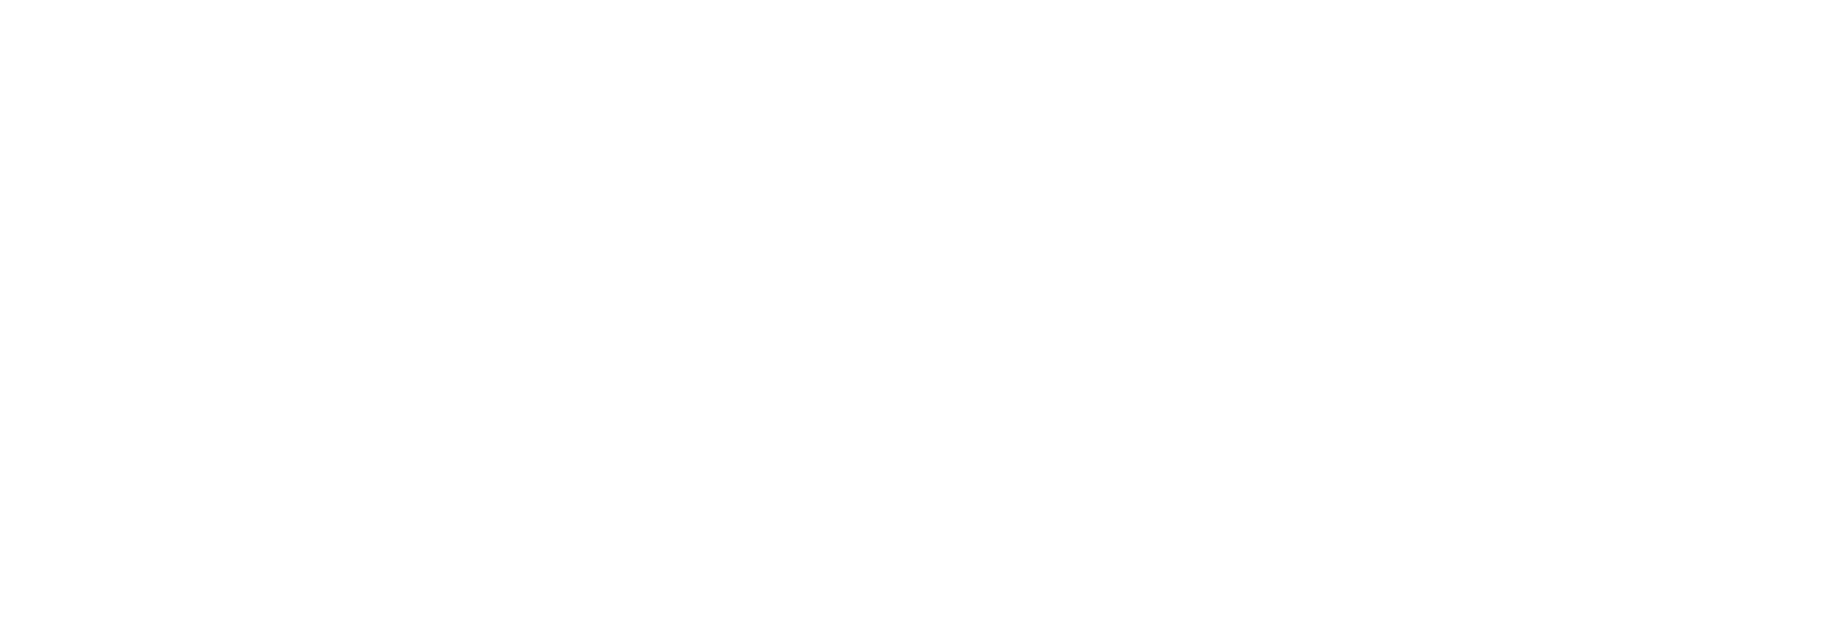 KrisP logo